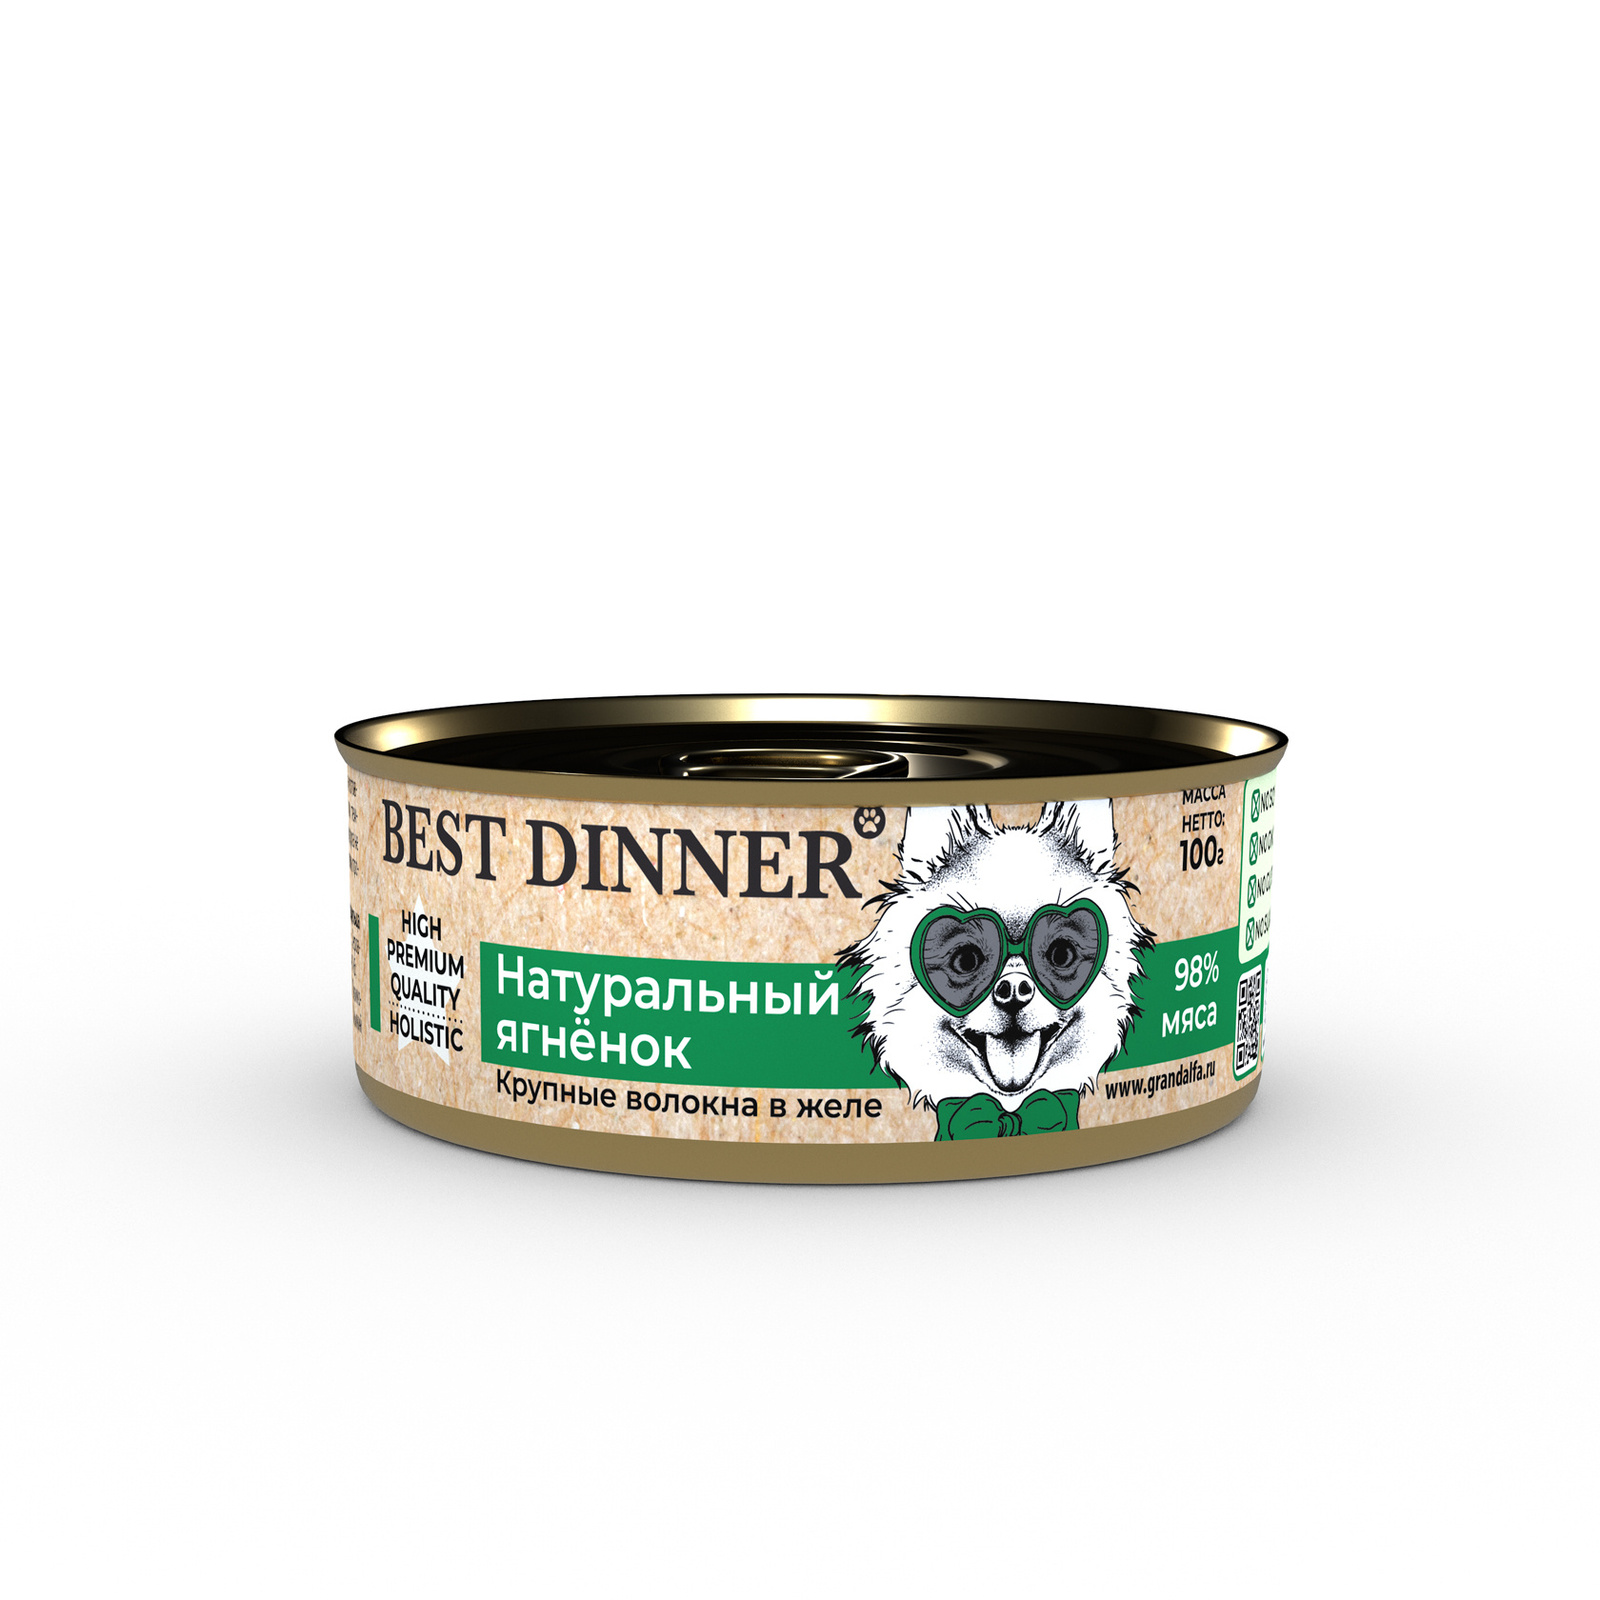 Best Dinner Best Dinner консервы Натуральный ягненок (340 г) best dinner best dinner гипоаллергенные консервы с кониной и рисом для собак всех пород 340 г